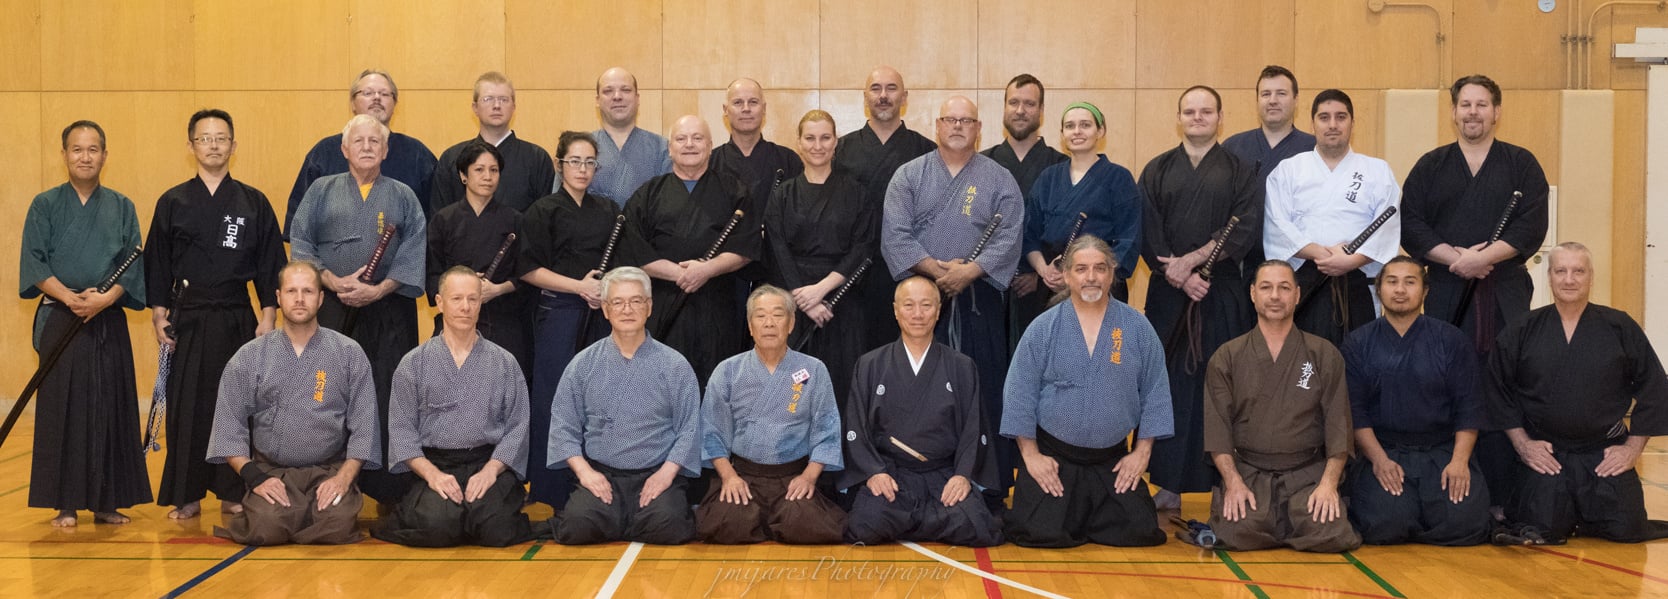 Saturday Pre-Taikai training group photo.